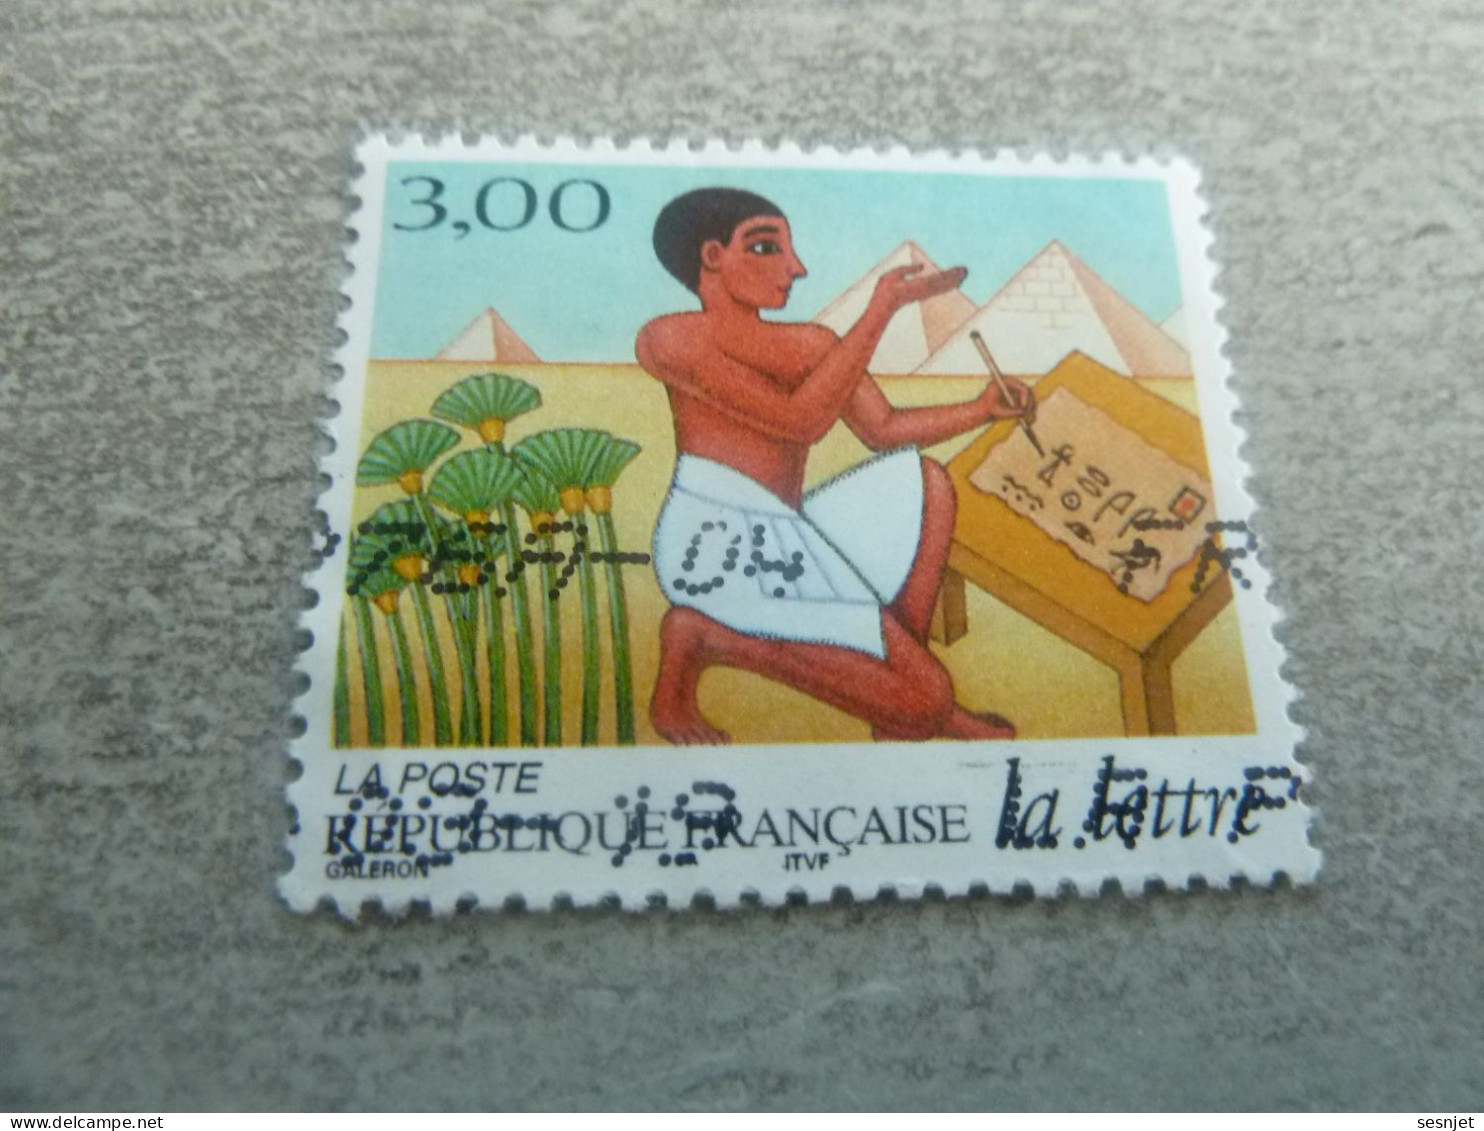 Les Journées De La Lettre - Le Voyage D'une Lettre - 3f. - Yt 3151 - Multicolore - Oblitéré - Année 1997 - - Used Stamps